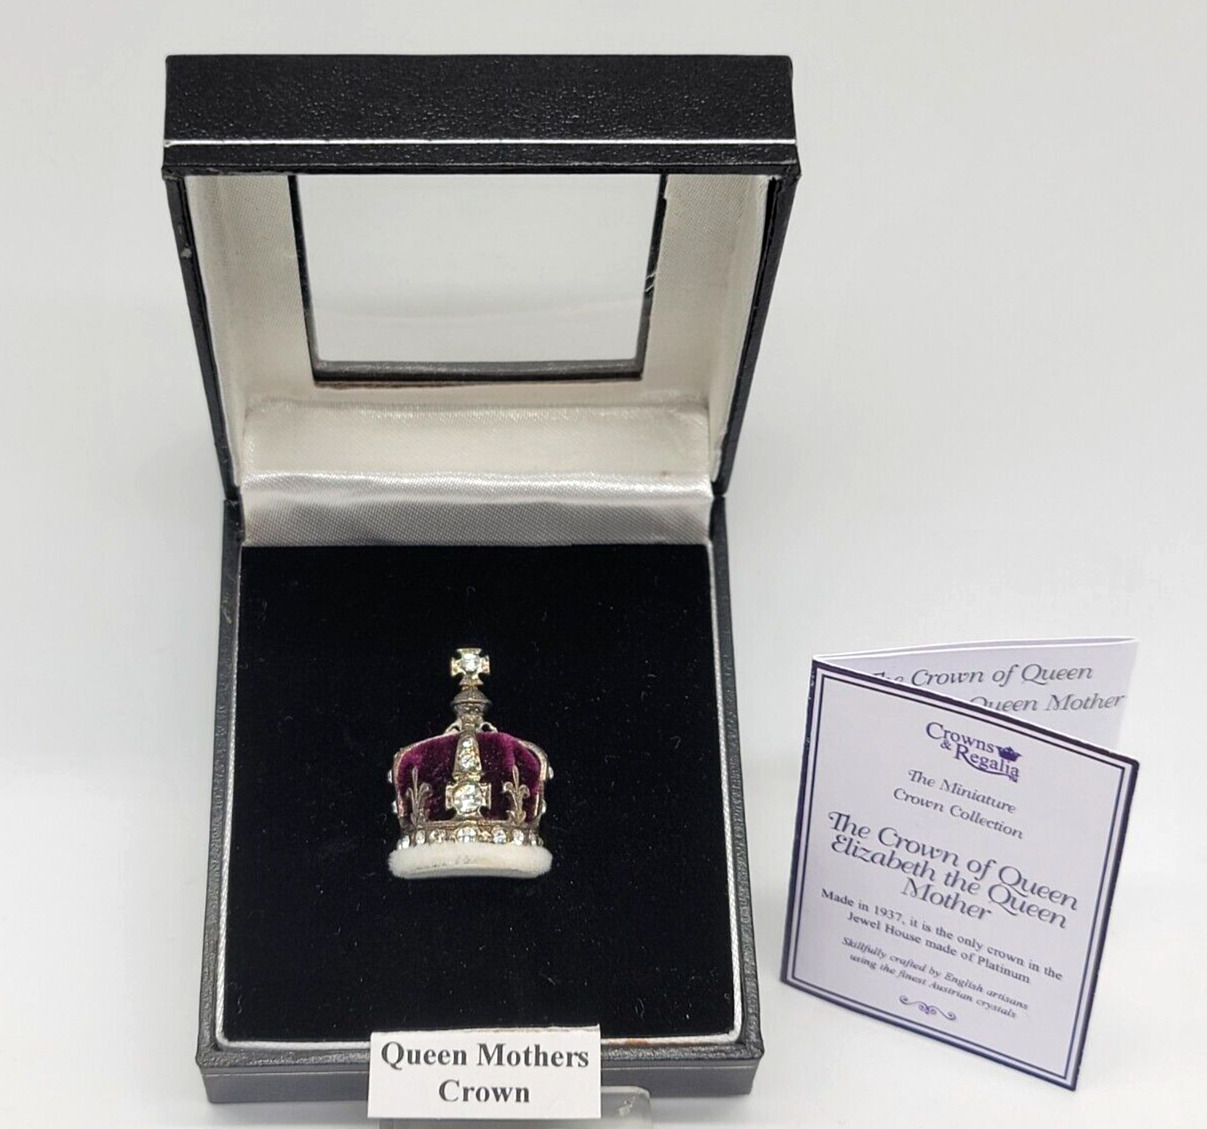 Crowns & Regalia Ltd The Crown of Queen Elizabeth the Queen Mother Miniature